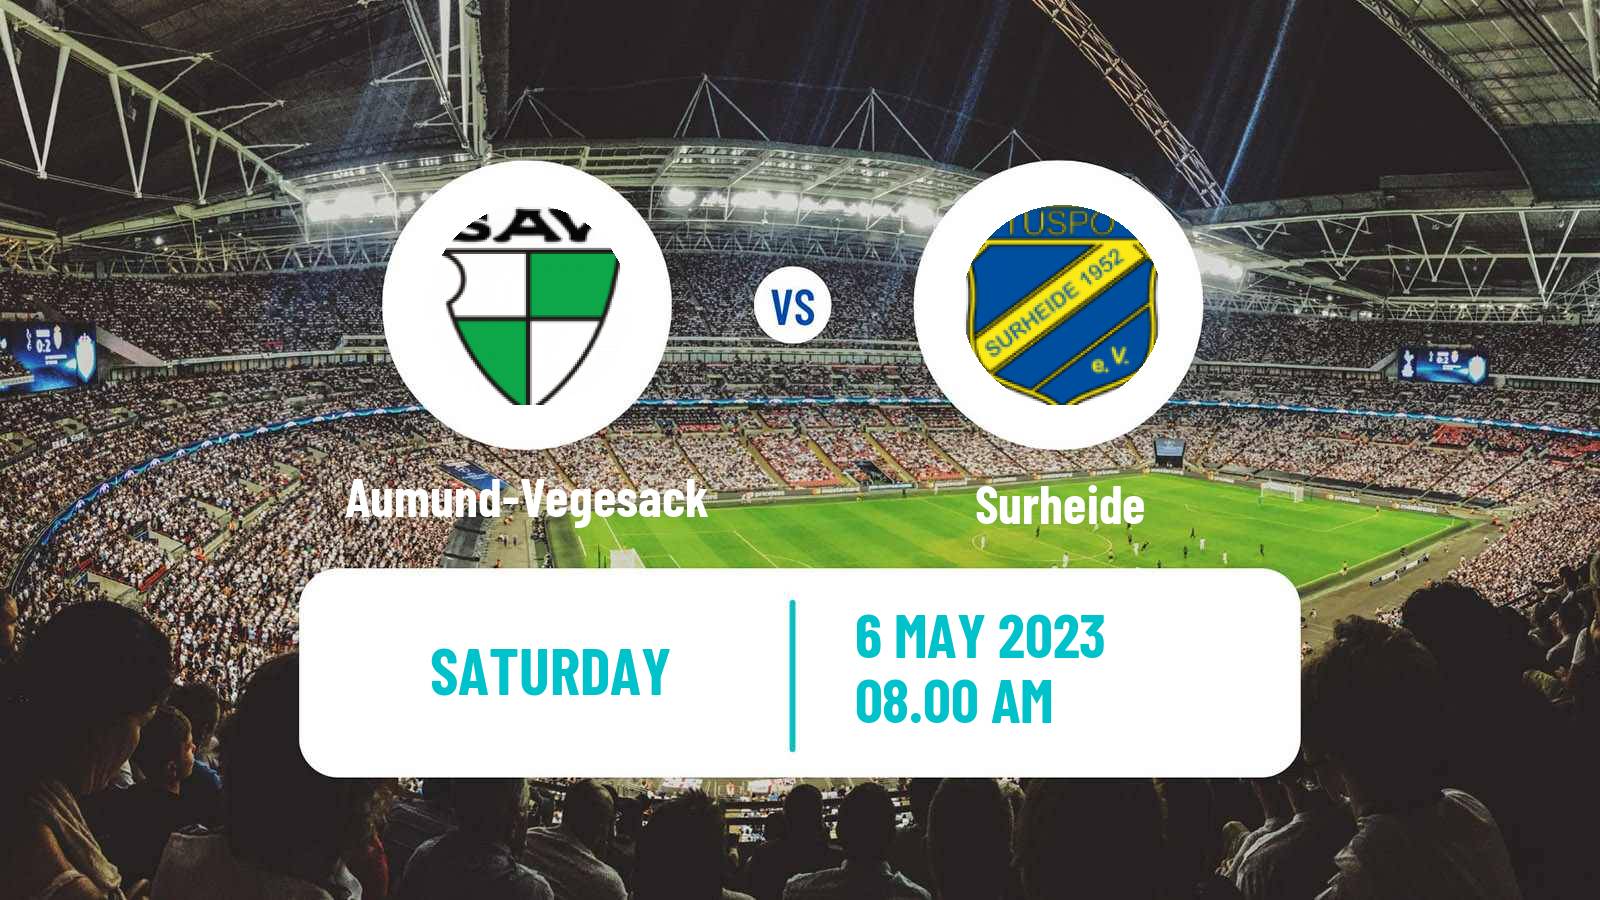 Soccer German Oberliga Bremen Aumund-Vegesack - Surheide